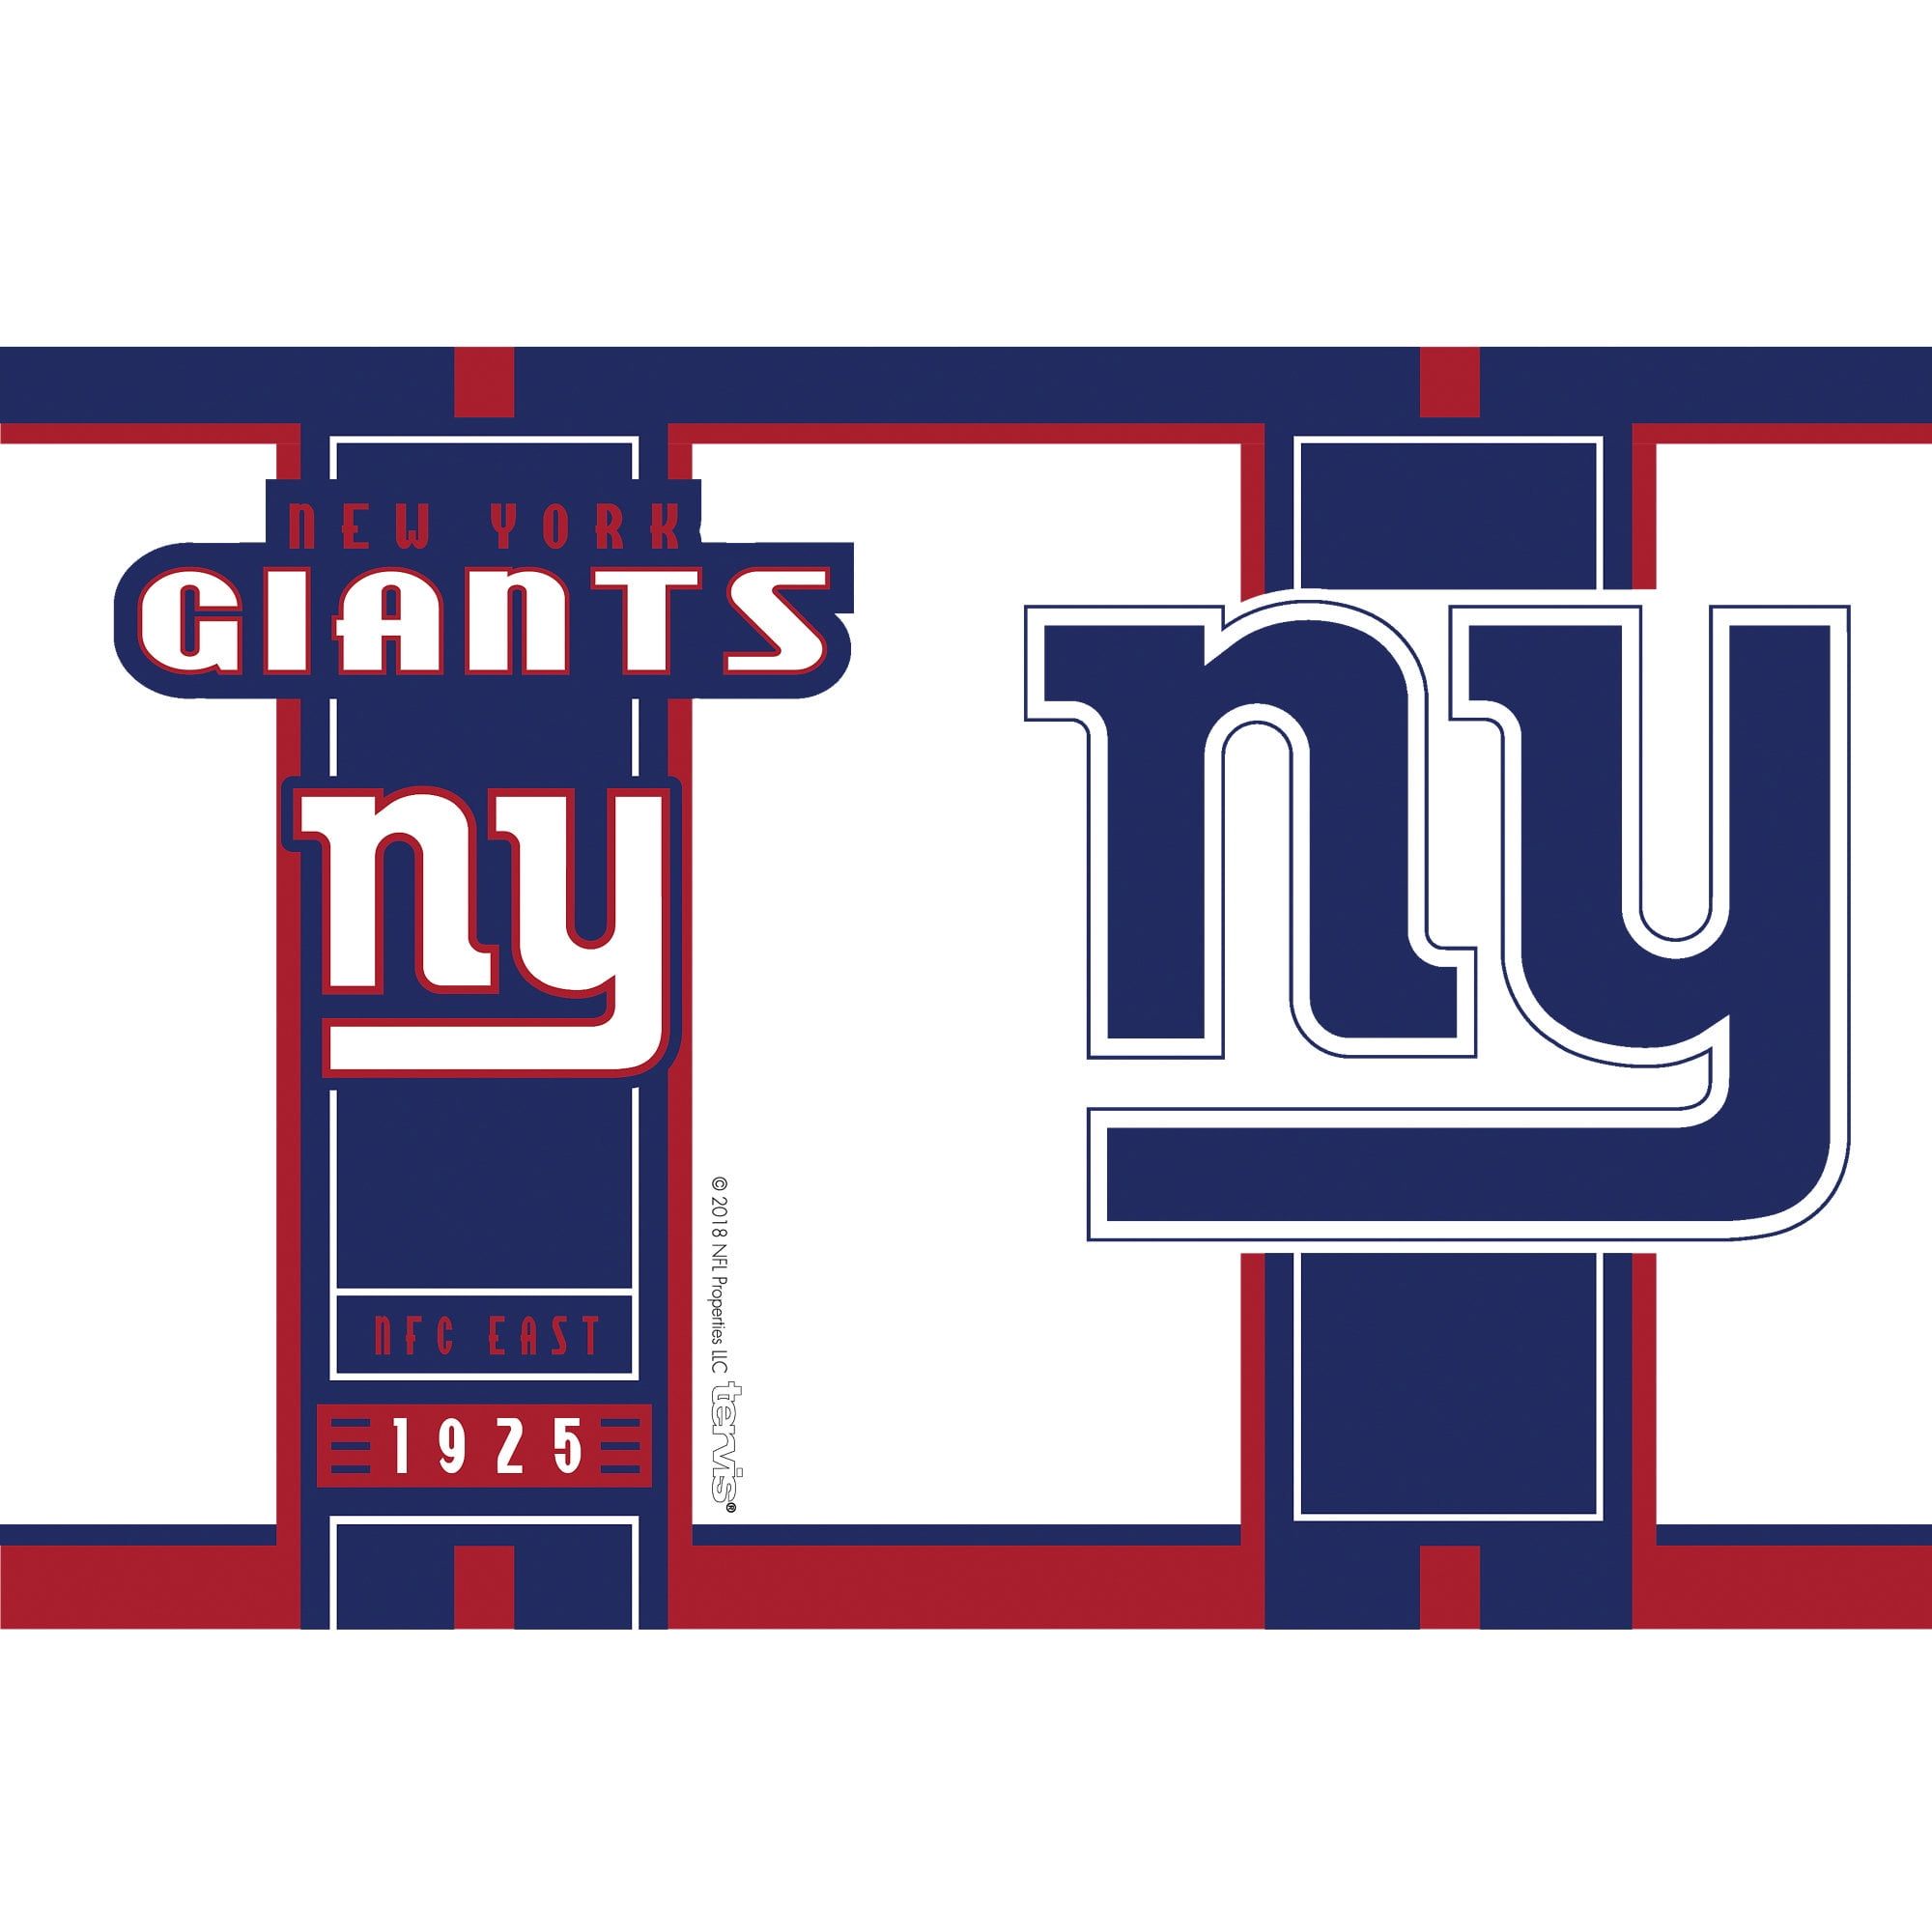 Tervis® NFL Tumbler - New York Giants S-23789NYG - Uline